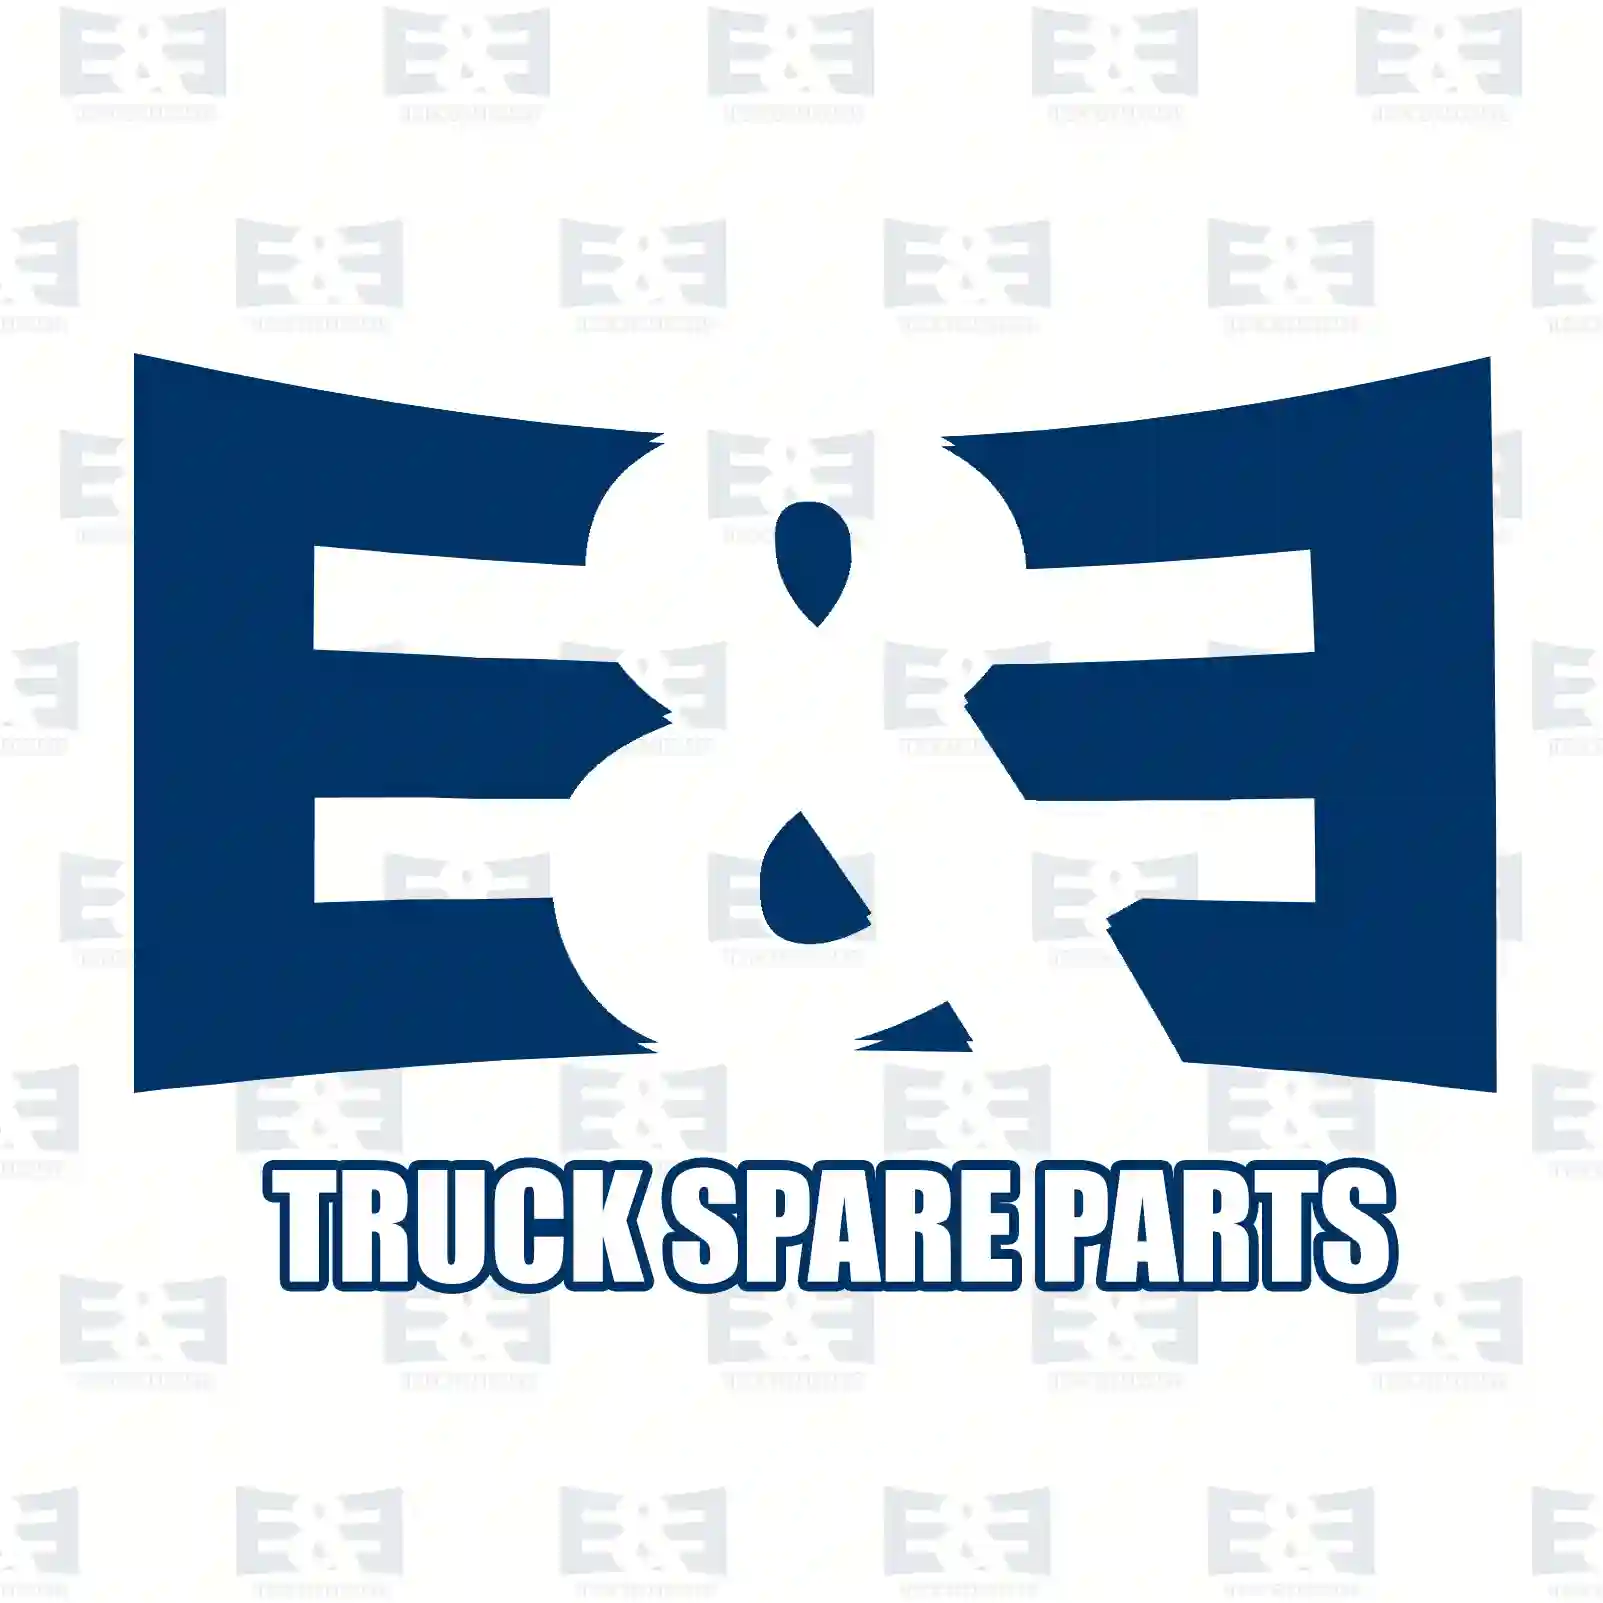 Oil seal, 2E2278975, 7408171450, 8171450, ZG02642-0008 ||  2E2278975 E&E Truck Spare Parts | Truck Spare Parts, Auotomotive Spare Parts Oil seal, 2E2278975, 7408171450, 8171450, ZG02642-0008 ||  2E2278975 E&E Truck Spare Parts | Truck Spare Parts, Auotomotive Spare Parts